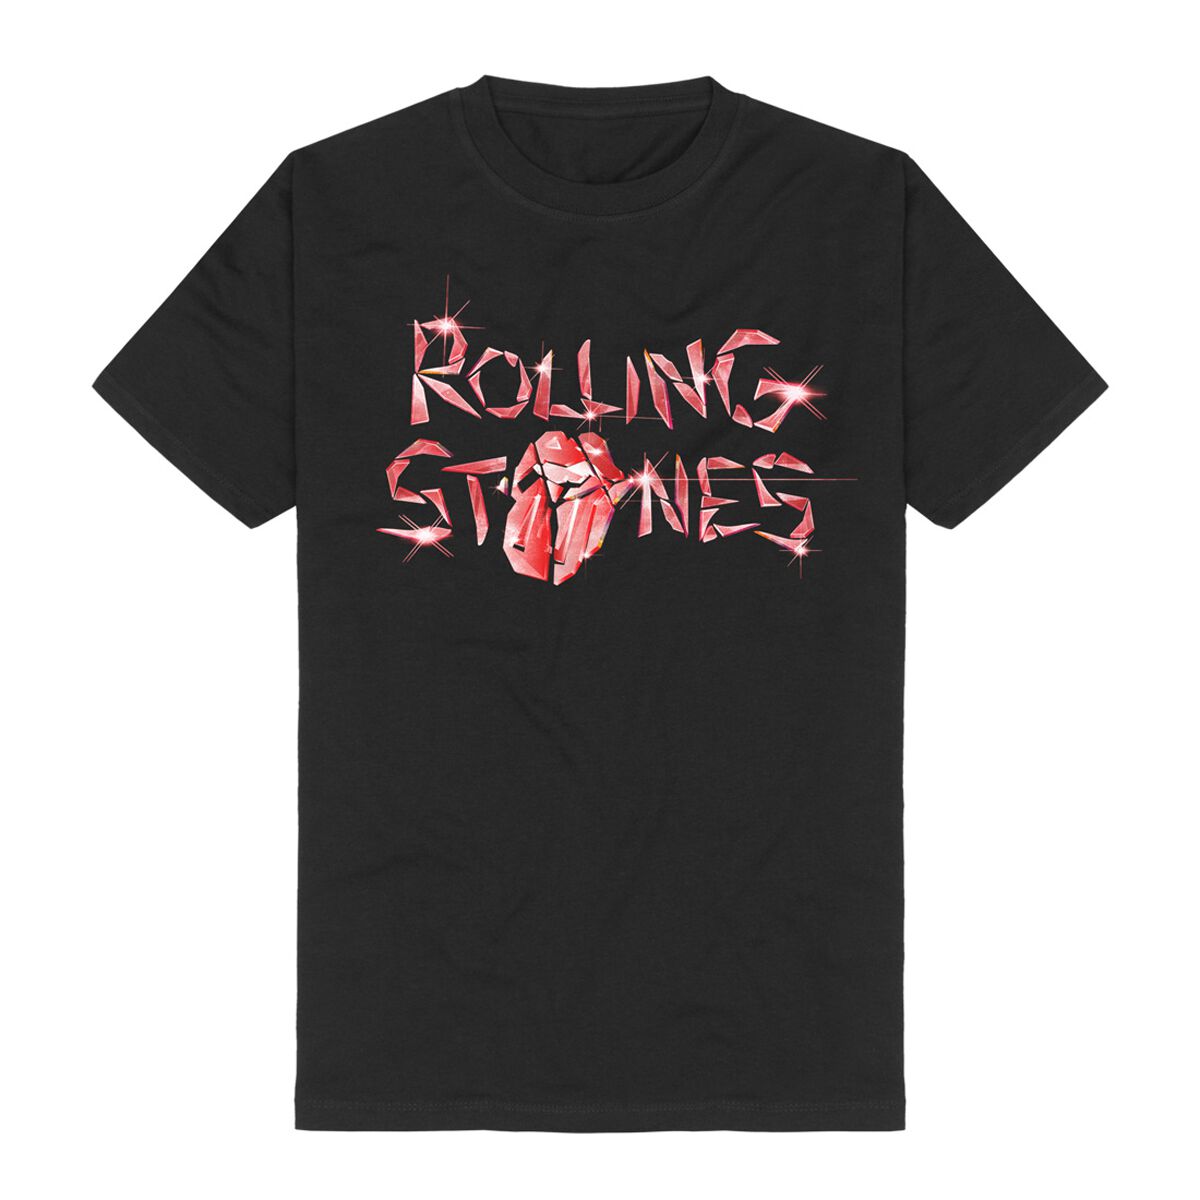 The Rolling Stones T-Shirt - Hackney Diamonds Glass Logo - S bis 5XL - für Männer - Größe XXL - schwarz  - Lizenziertes Merchandise!